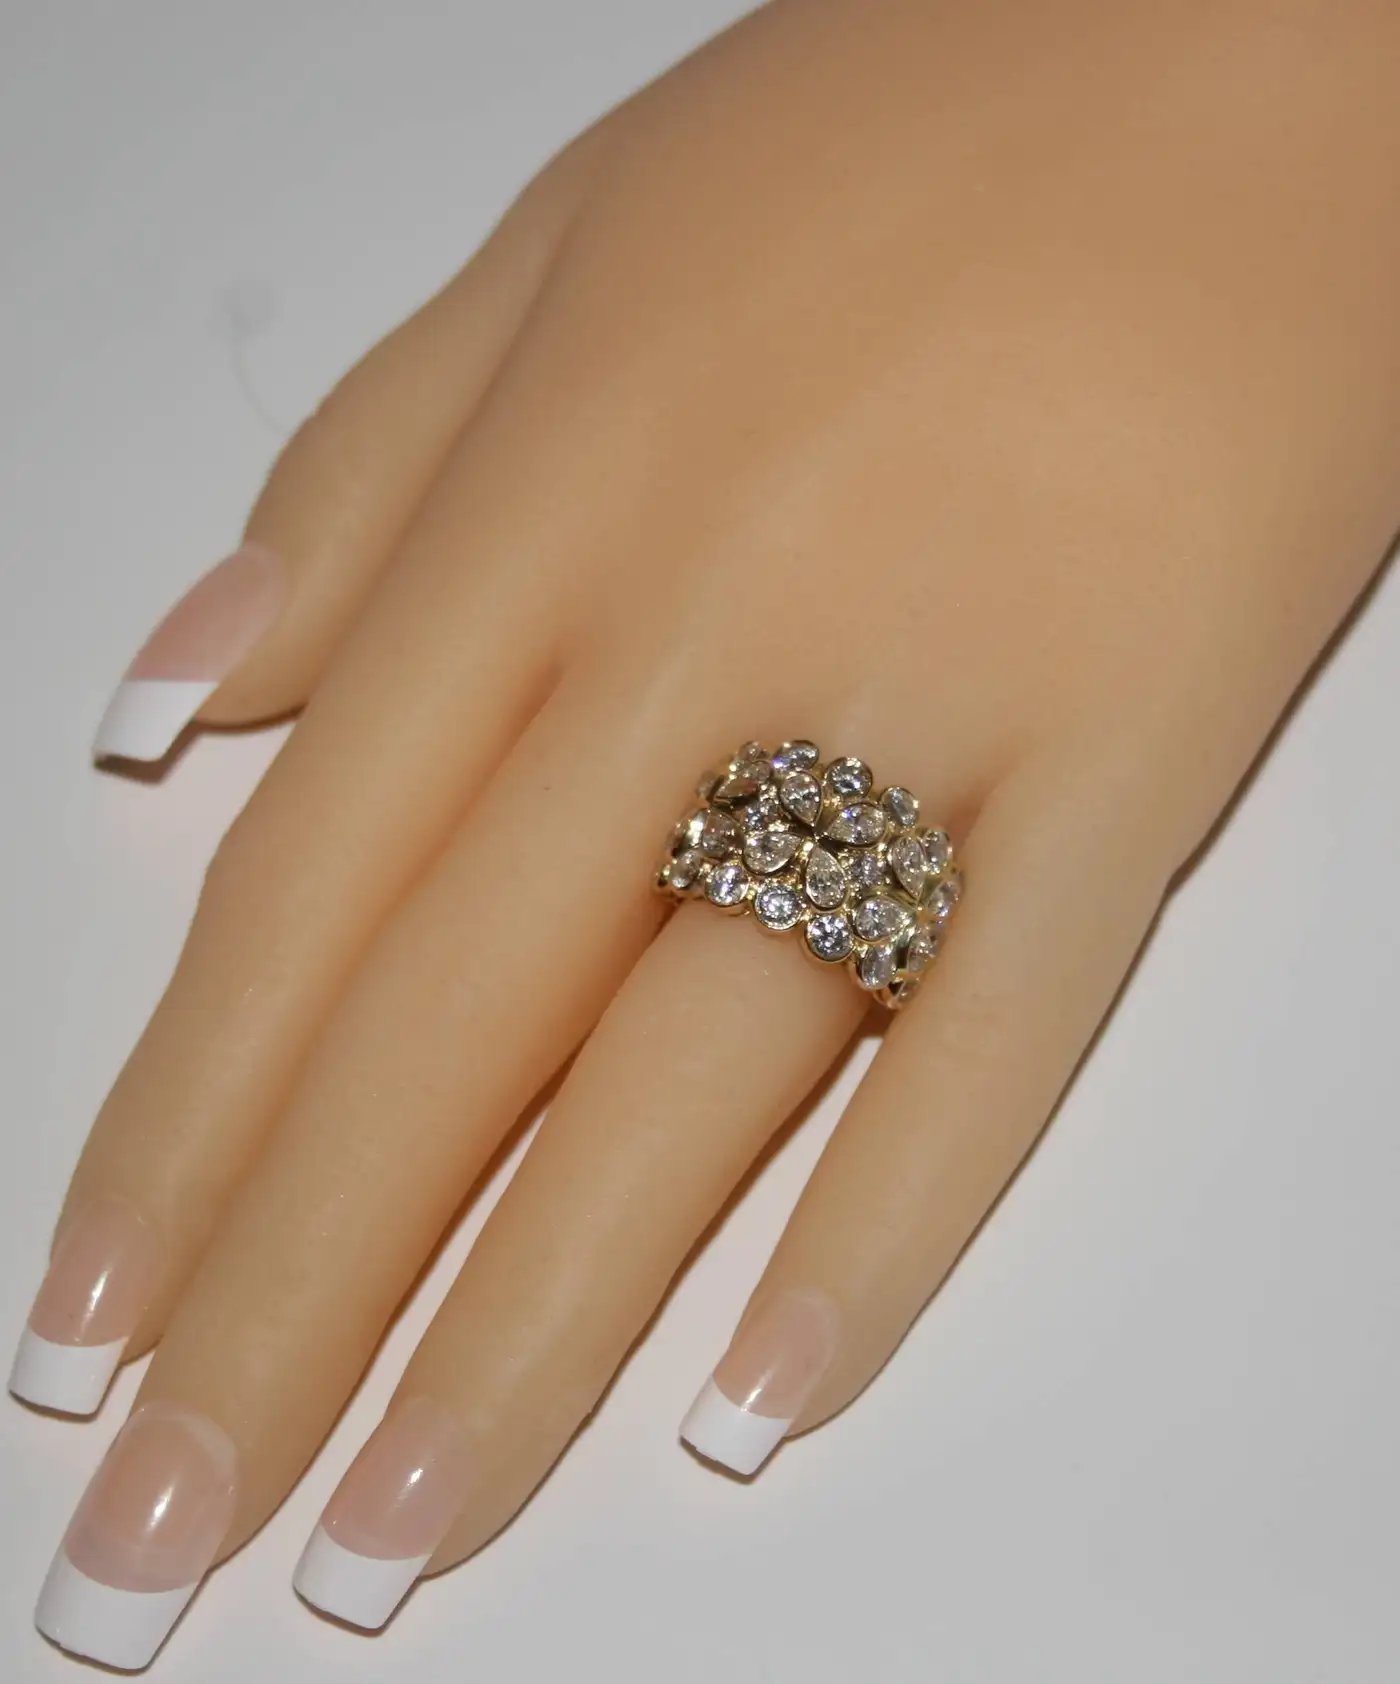 Rosee-4.25-Carats-Diamond-Gold-Floral-Band-Ring-6.webp